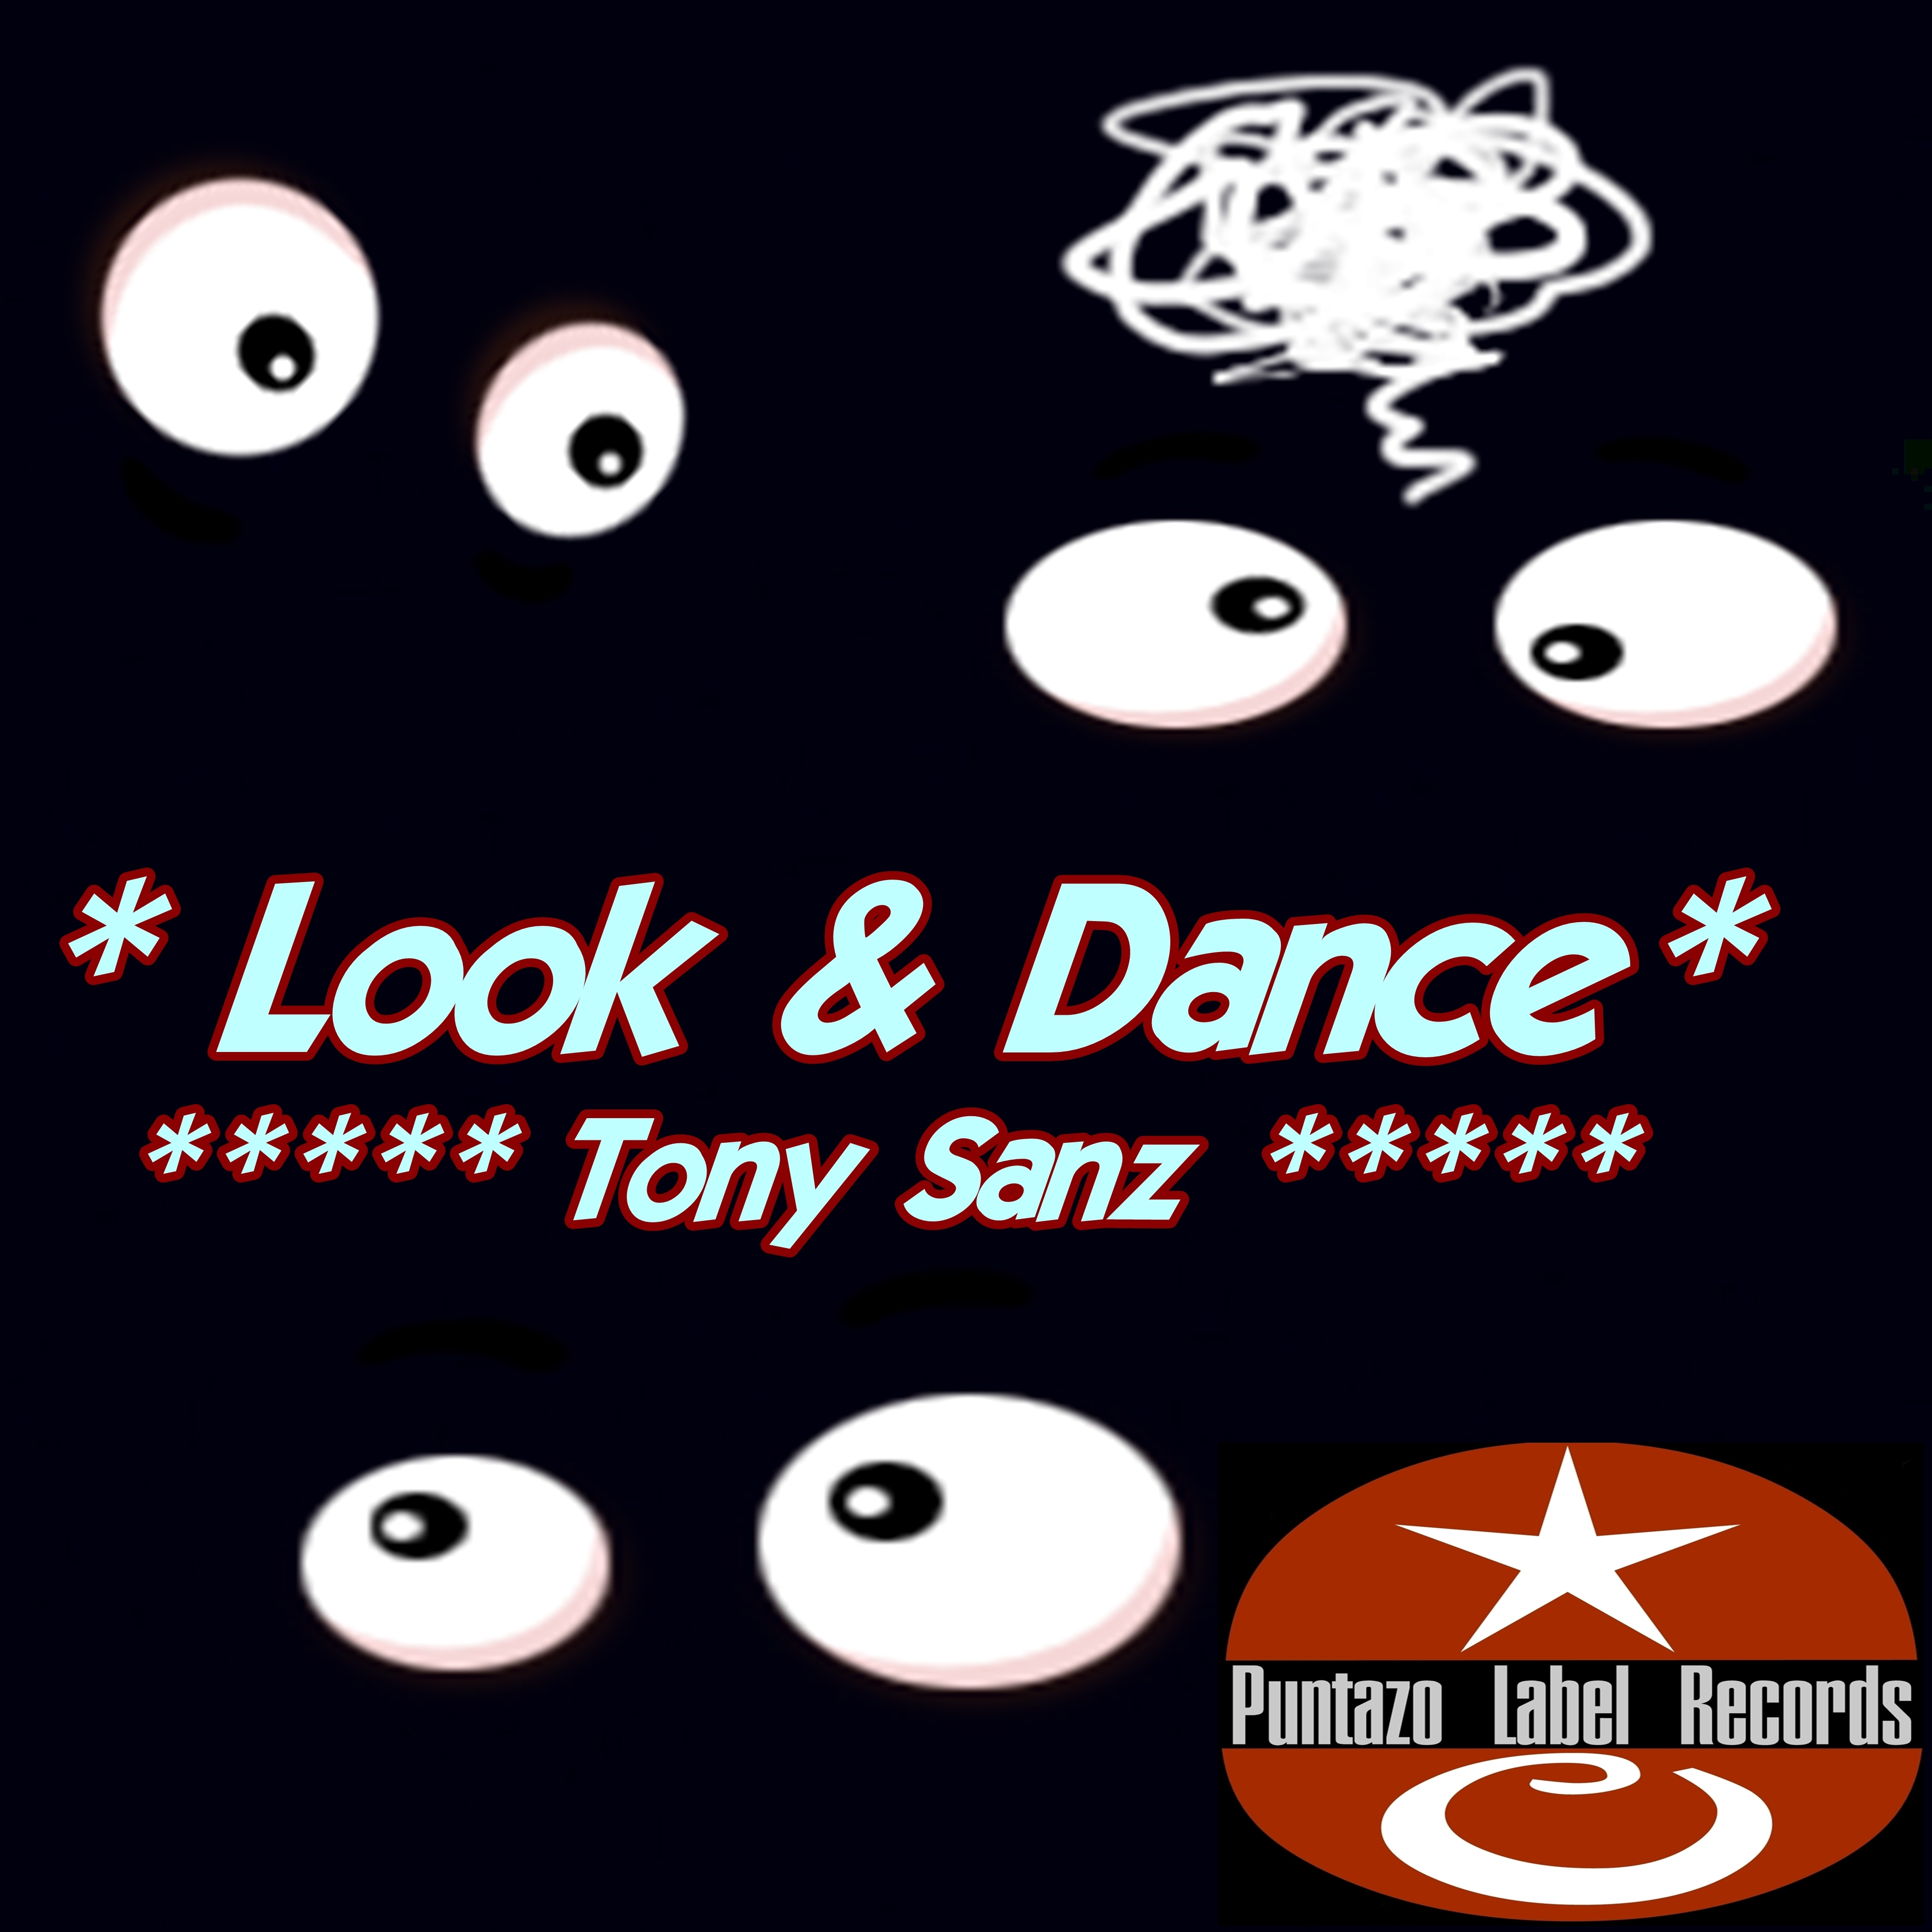 Look & Dance